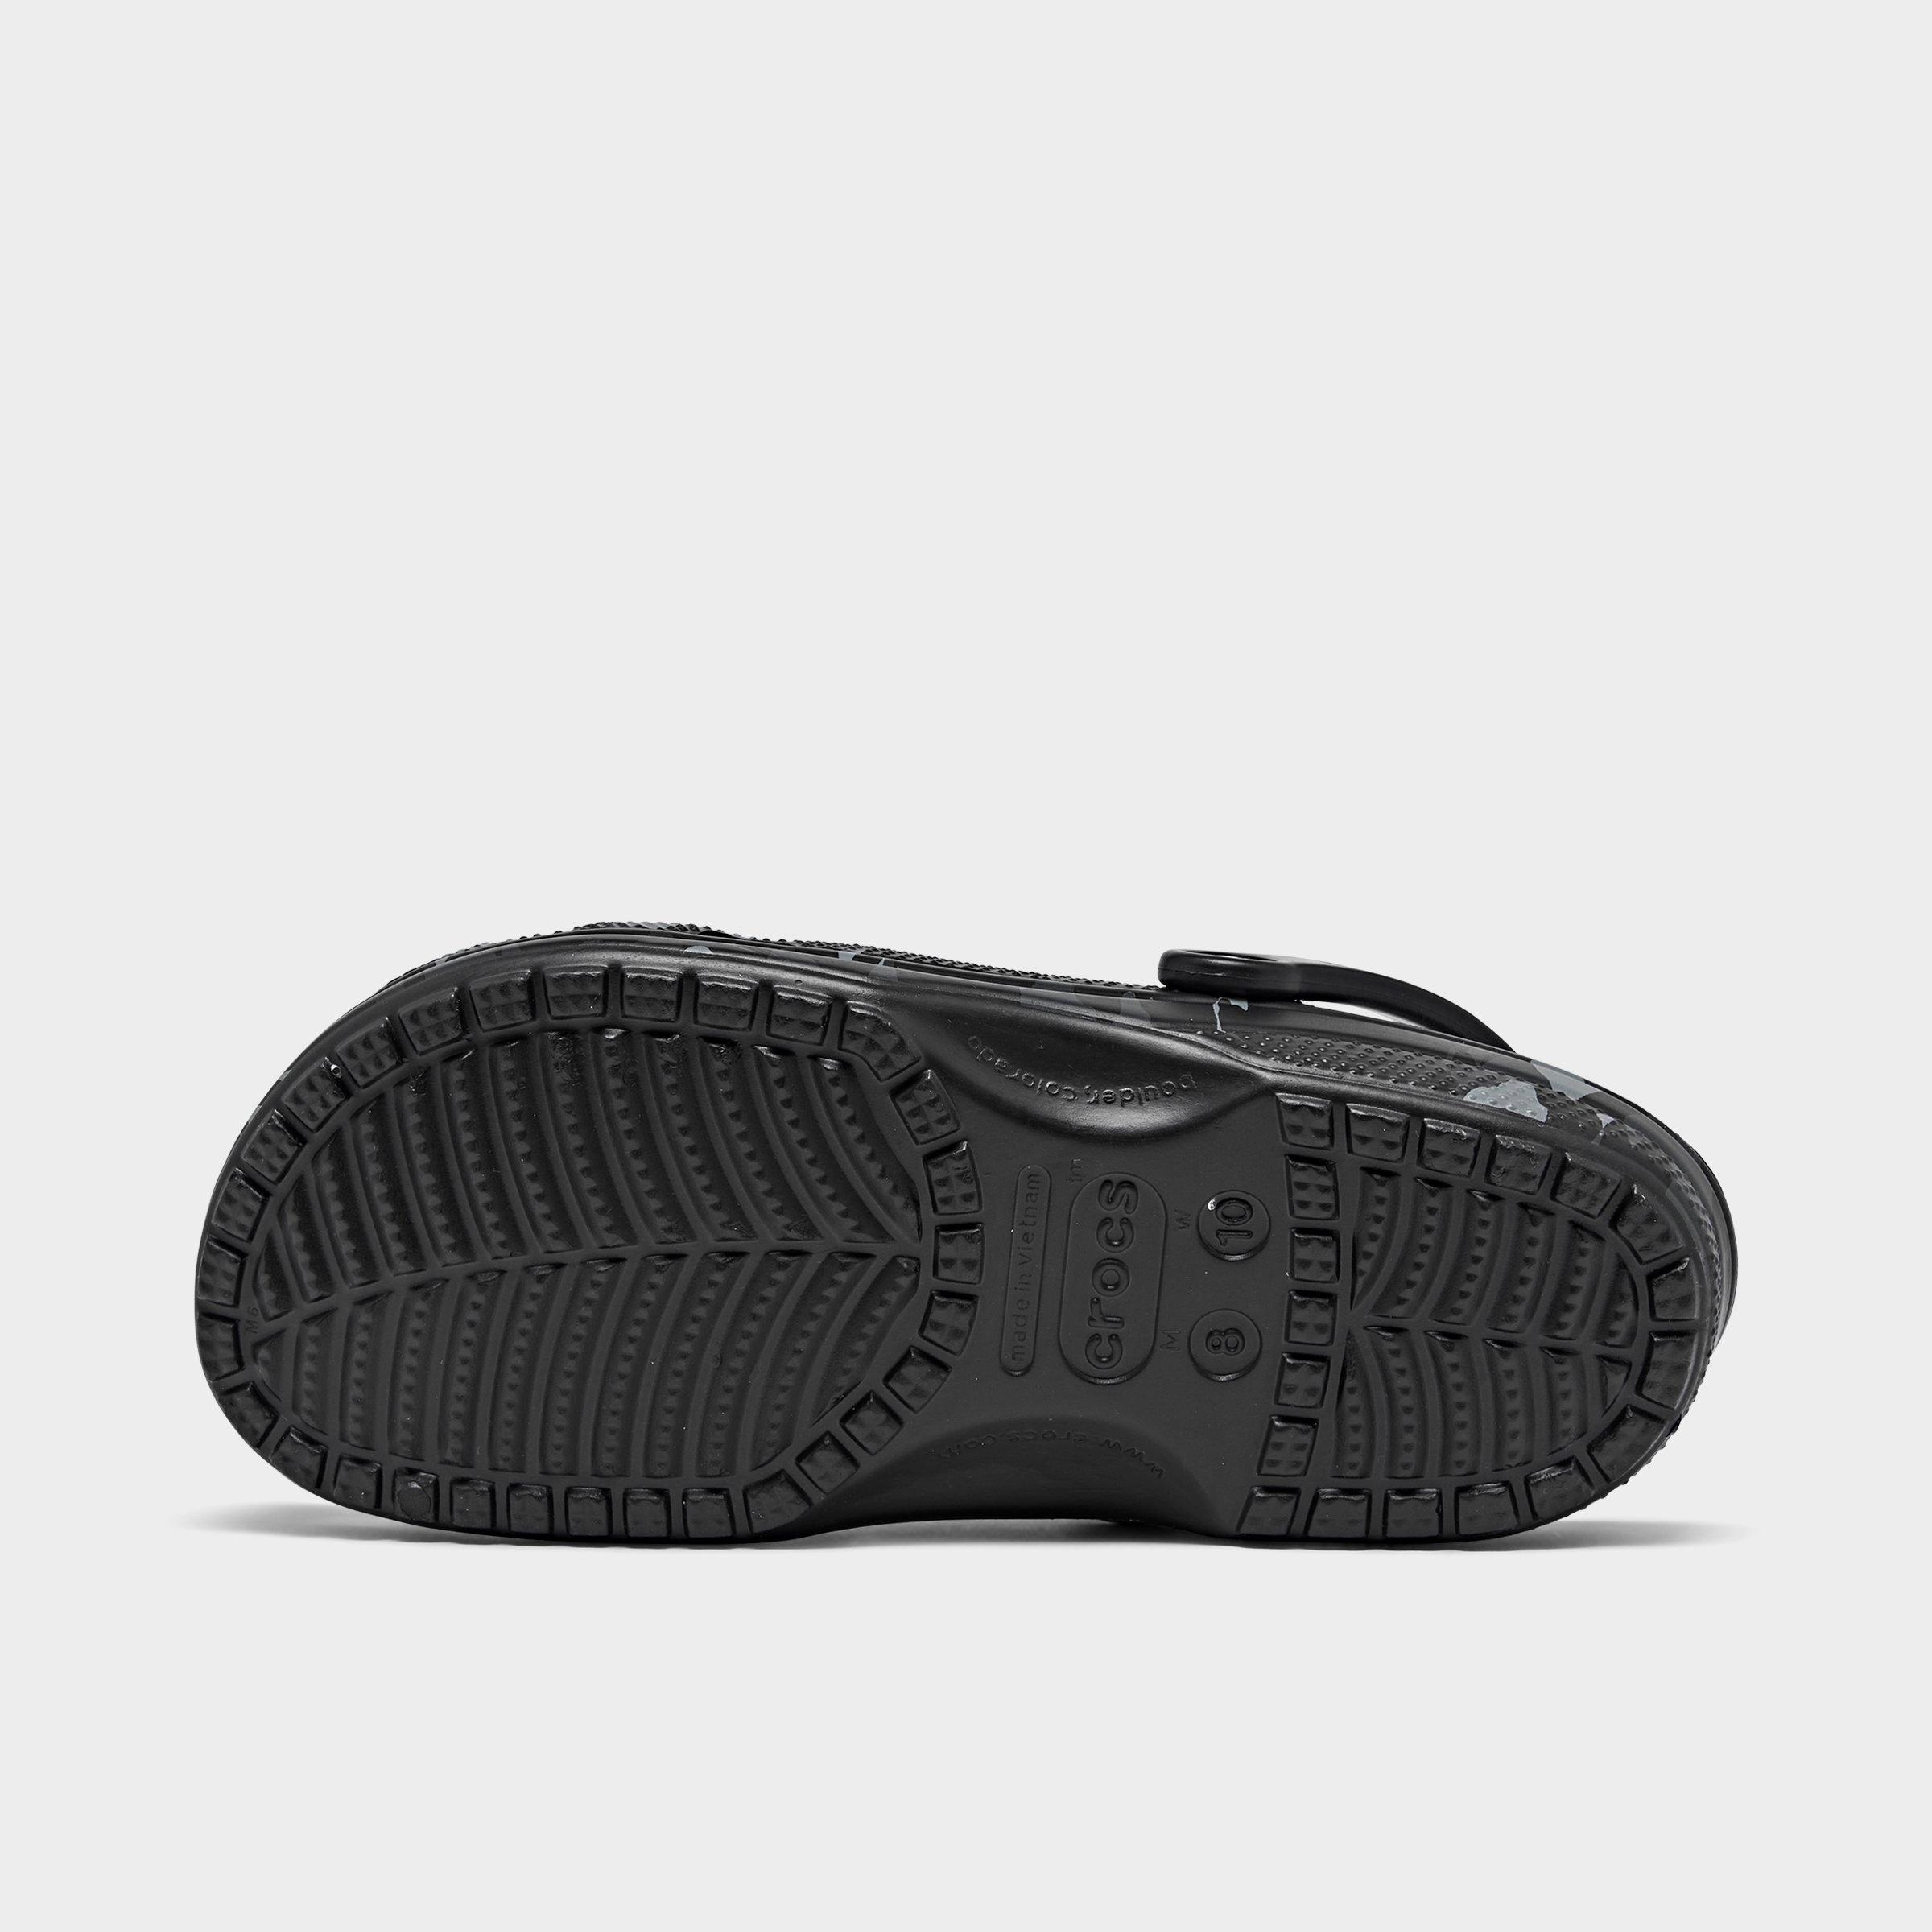 grey camo crocs sneakers